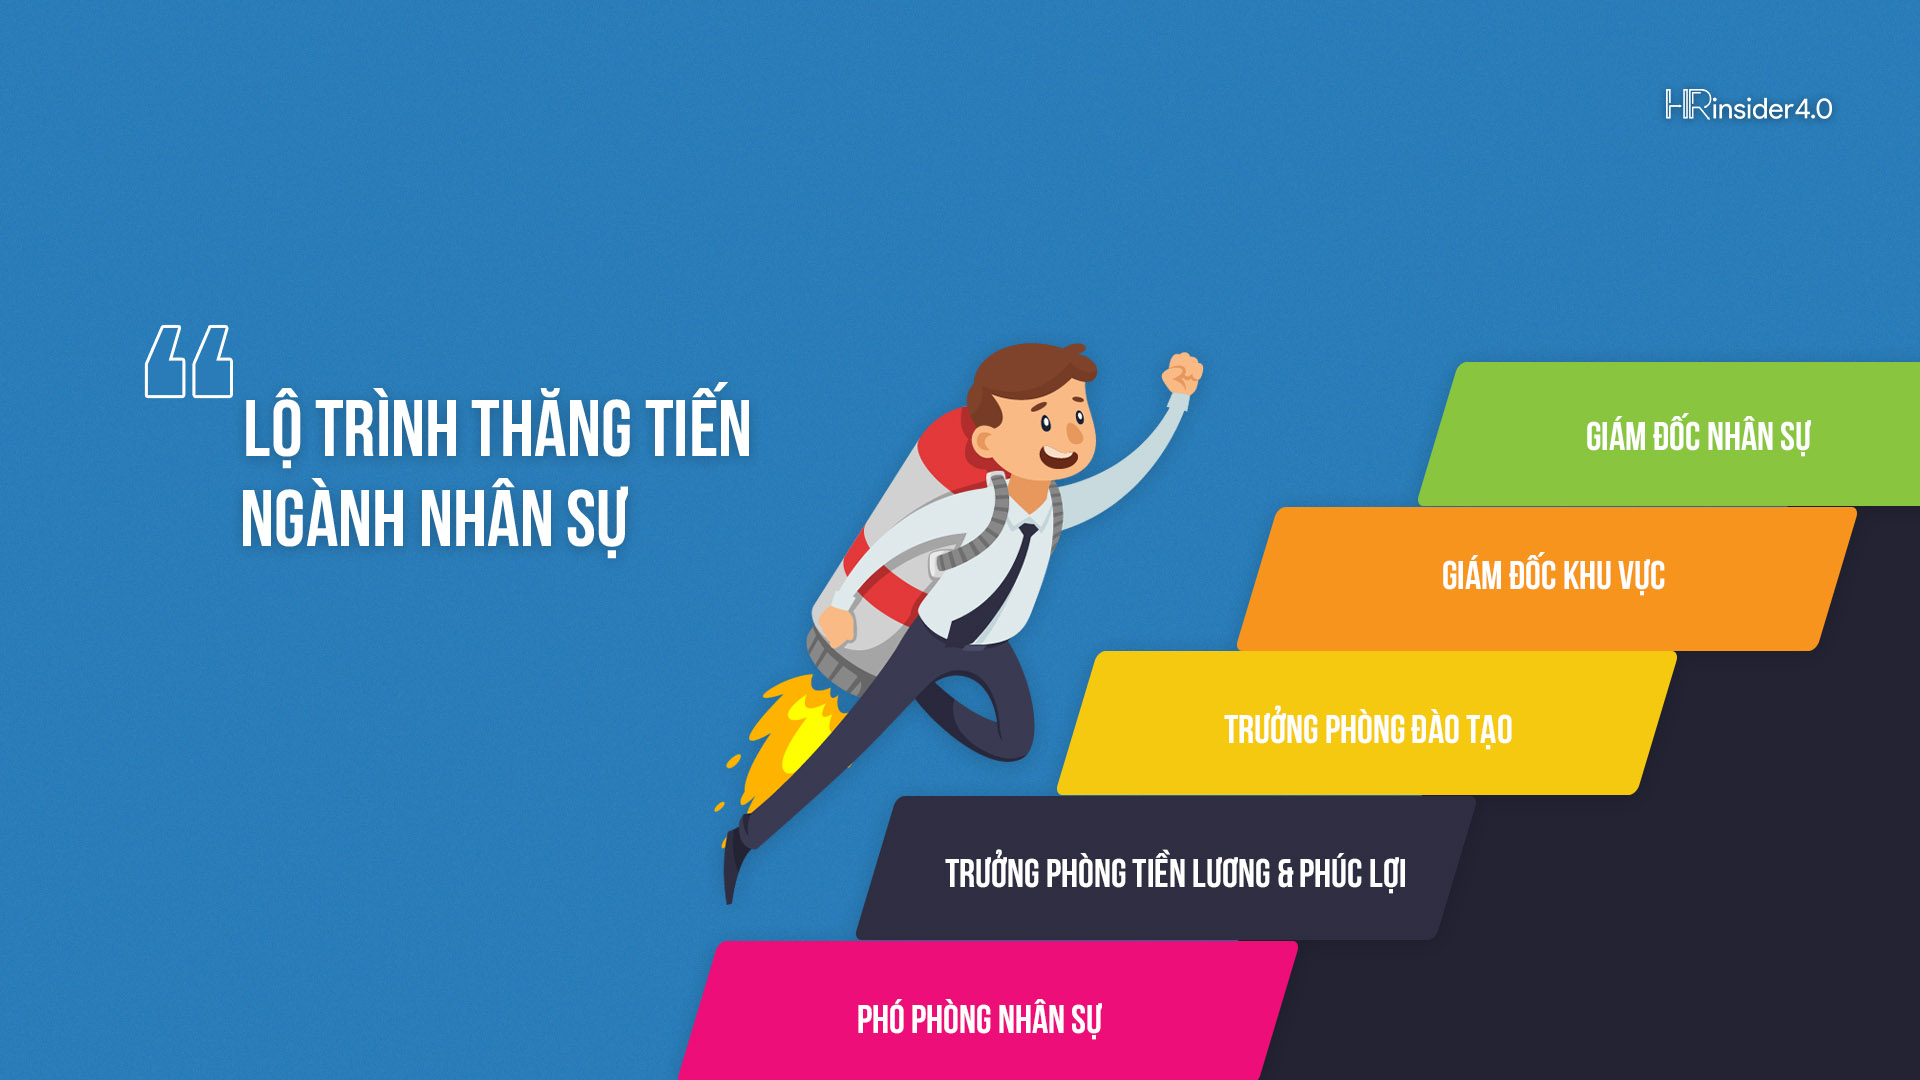 Lương của HR generalist ở Việt Nam là bao nhiêu?